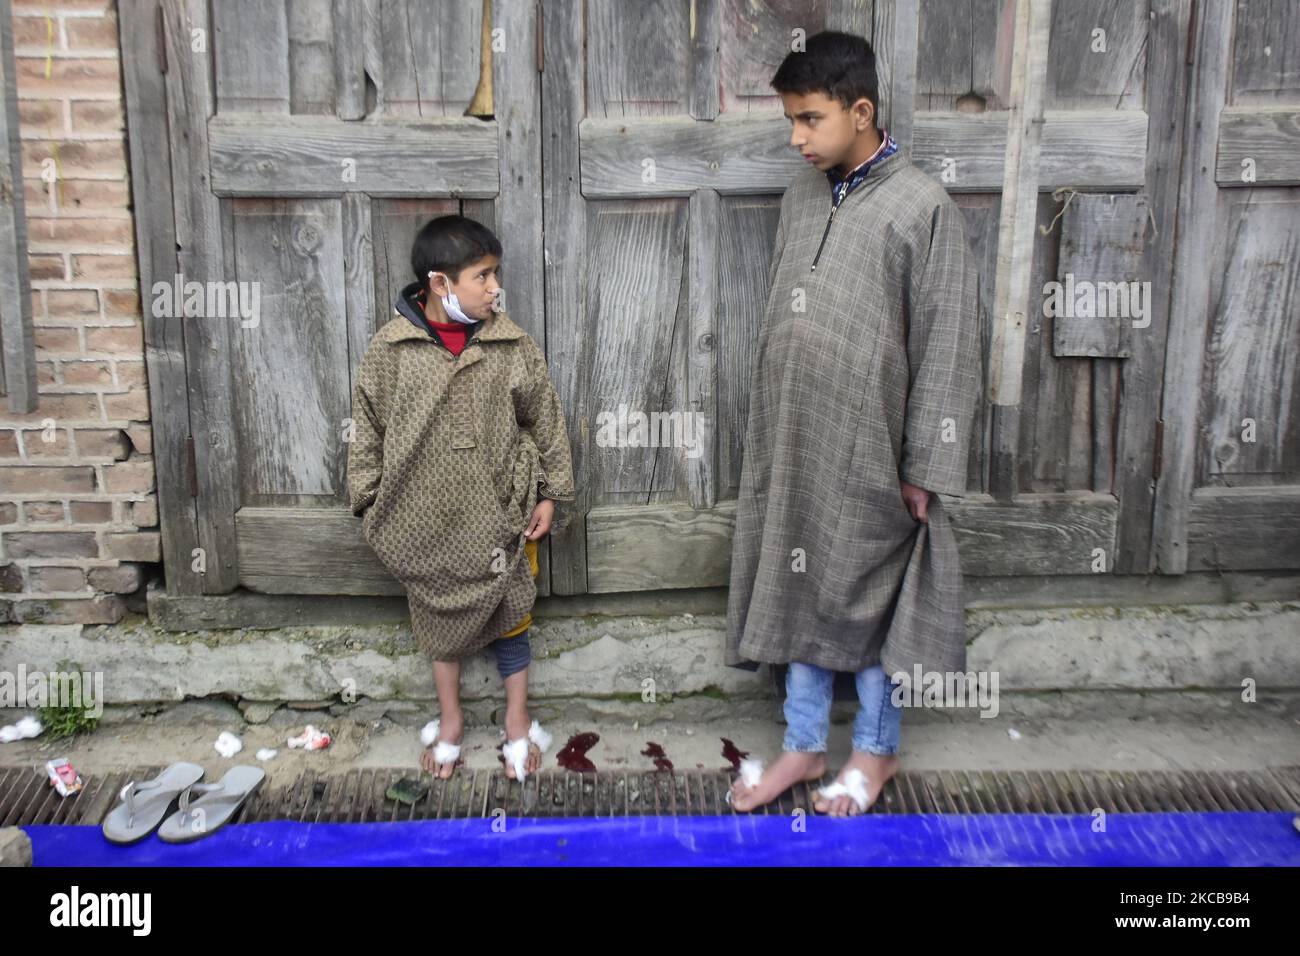 Les garçons de Kashmiri prennent une thérapie de leech à la veille de Nauroz (nouvel an persan) à Srinagar, en Inde, au Cachemire le 21 mars 2021. la thérapie de leech connue localement « Derkhe Illaaj » est l'une des plus anciennes thérapies complémentaires, employées par le Cachemire pour traiter diverses maladies de la peau, l'arthrite, les maux de tête chroniques, gelures et sinusite. (Photo de Muzamil Mattoo/NurPhoto) Banque D'Images